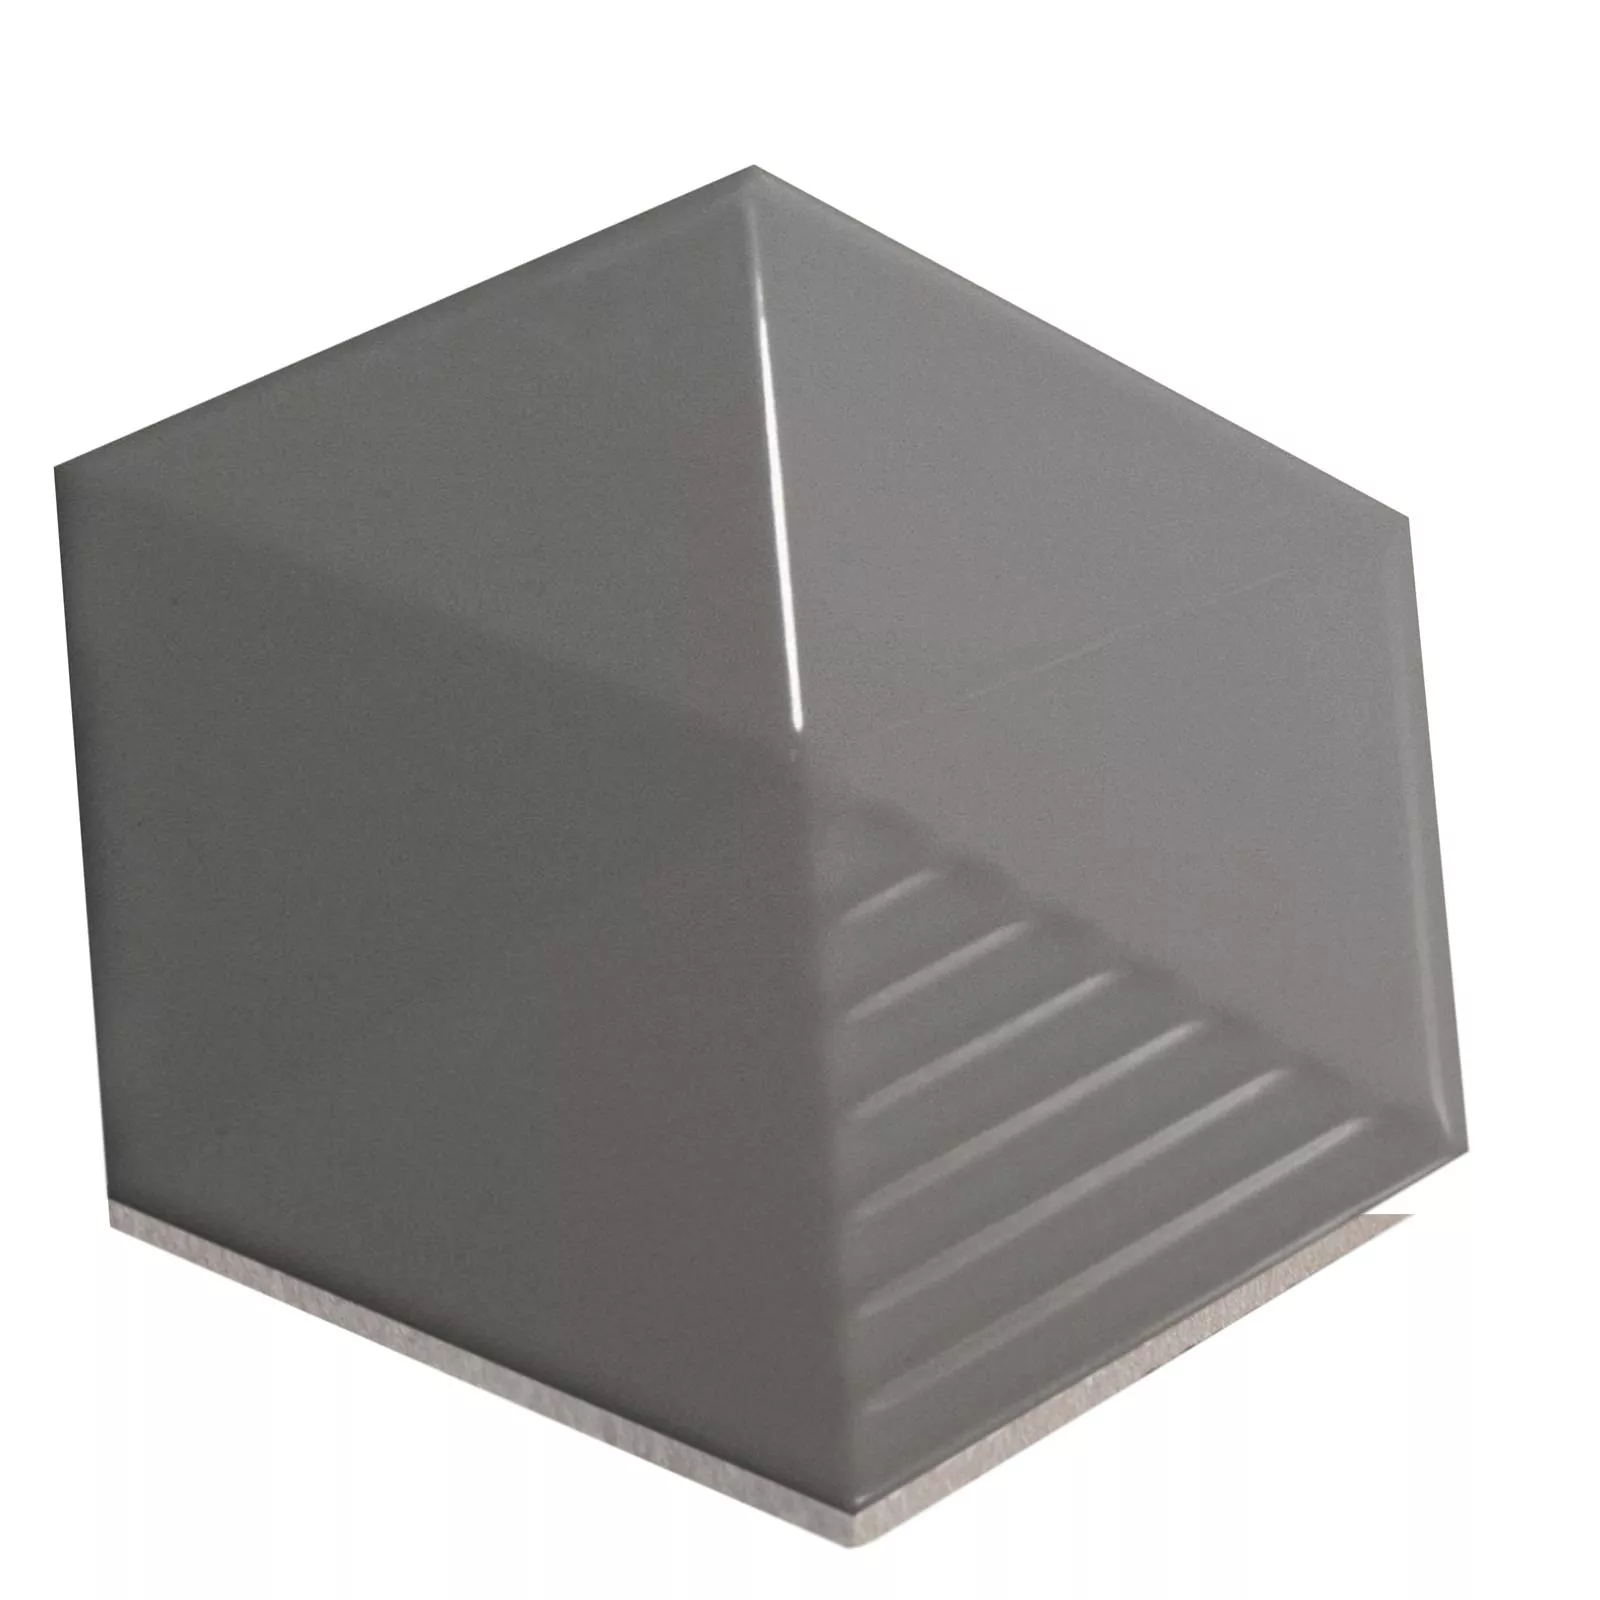 Wandfliesen Rockford 3D Hexagon 12,4x10,7cm Grau